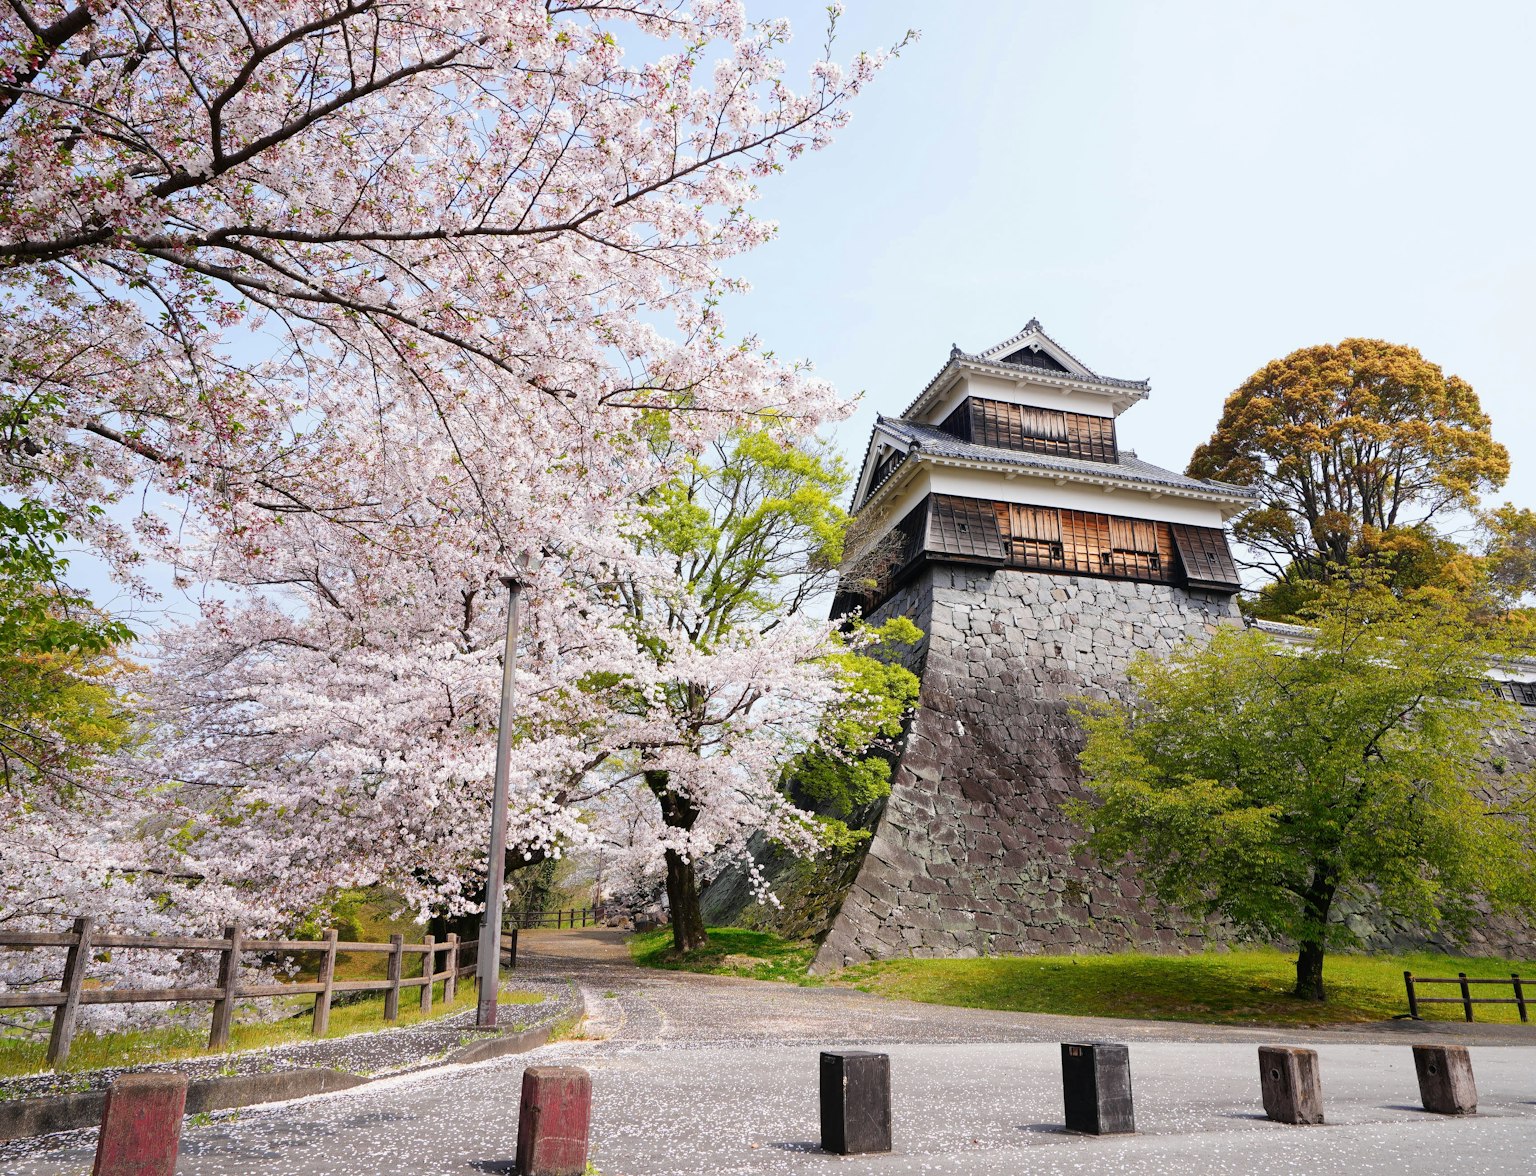 Kyushu Cherry Blossoms